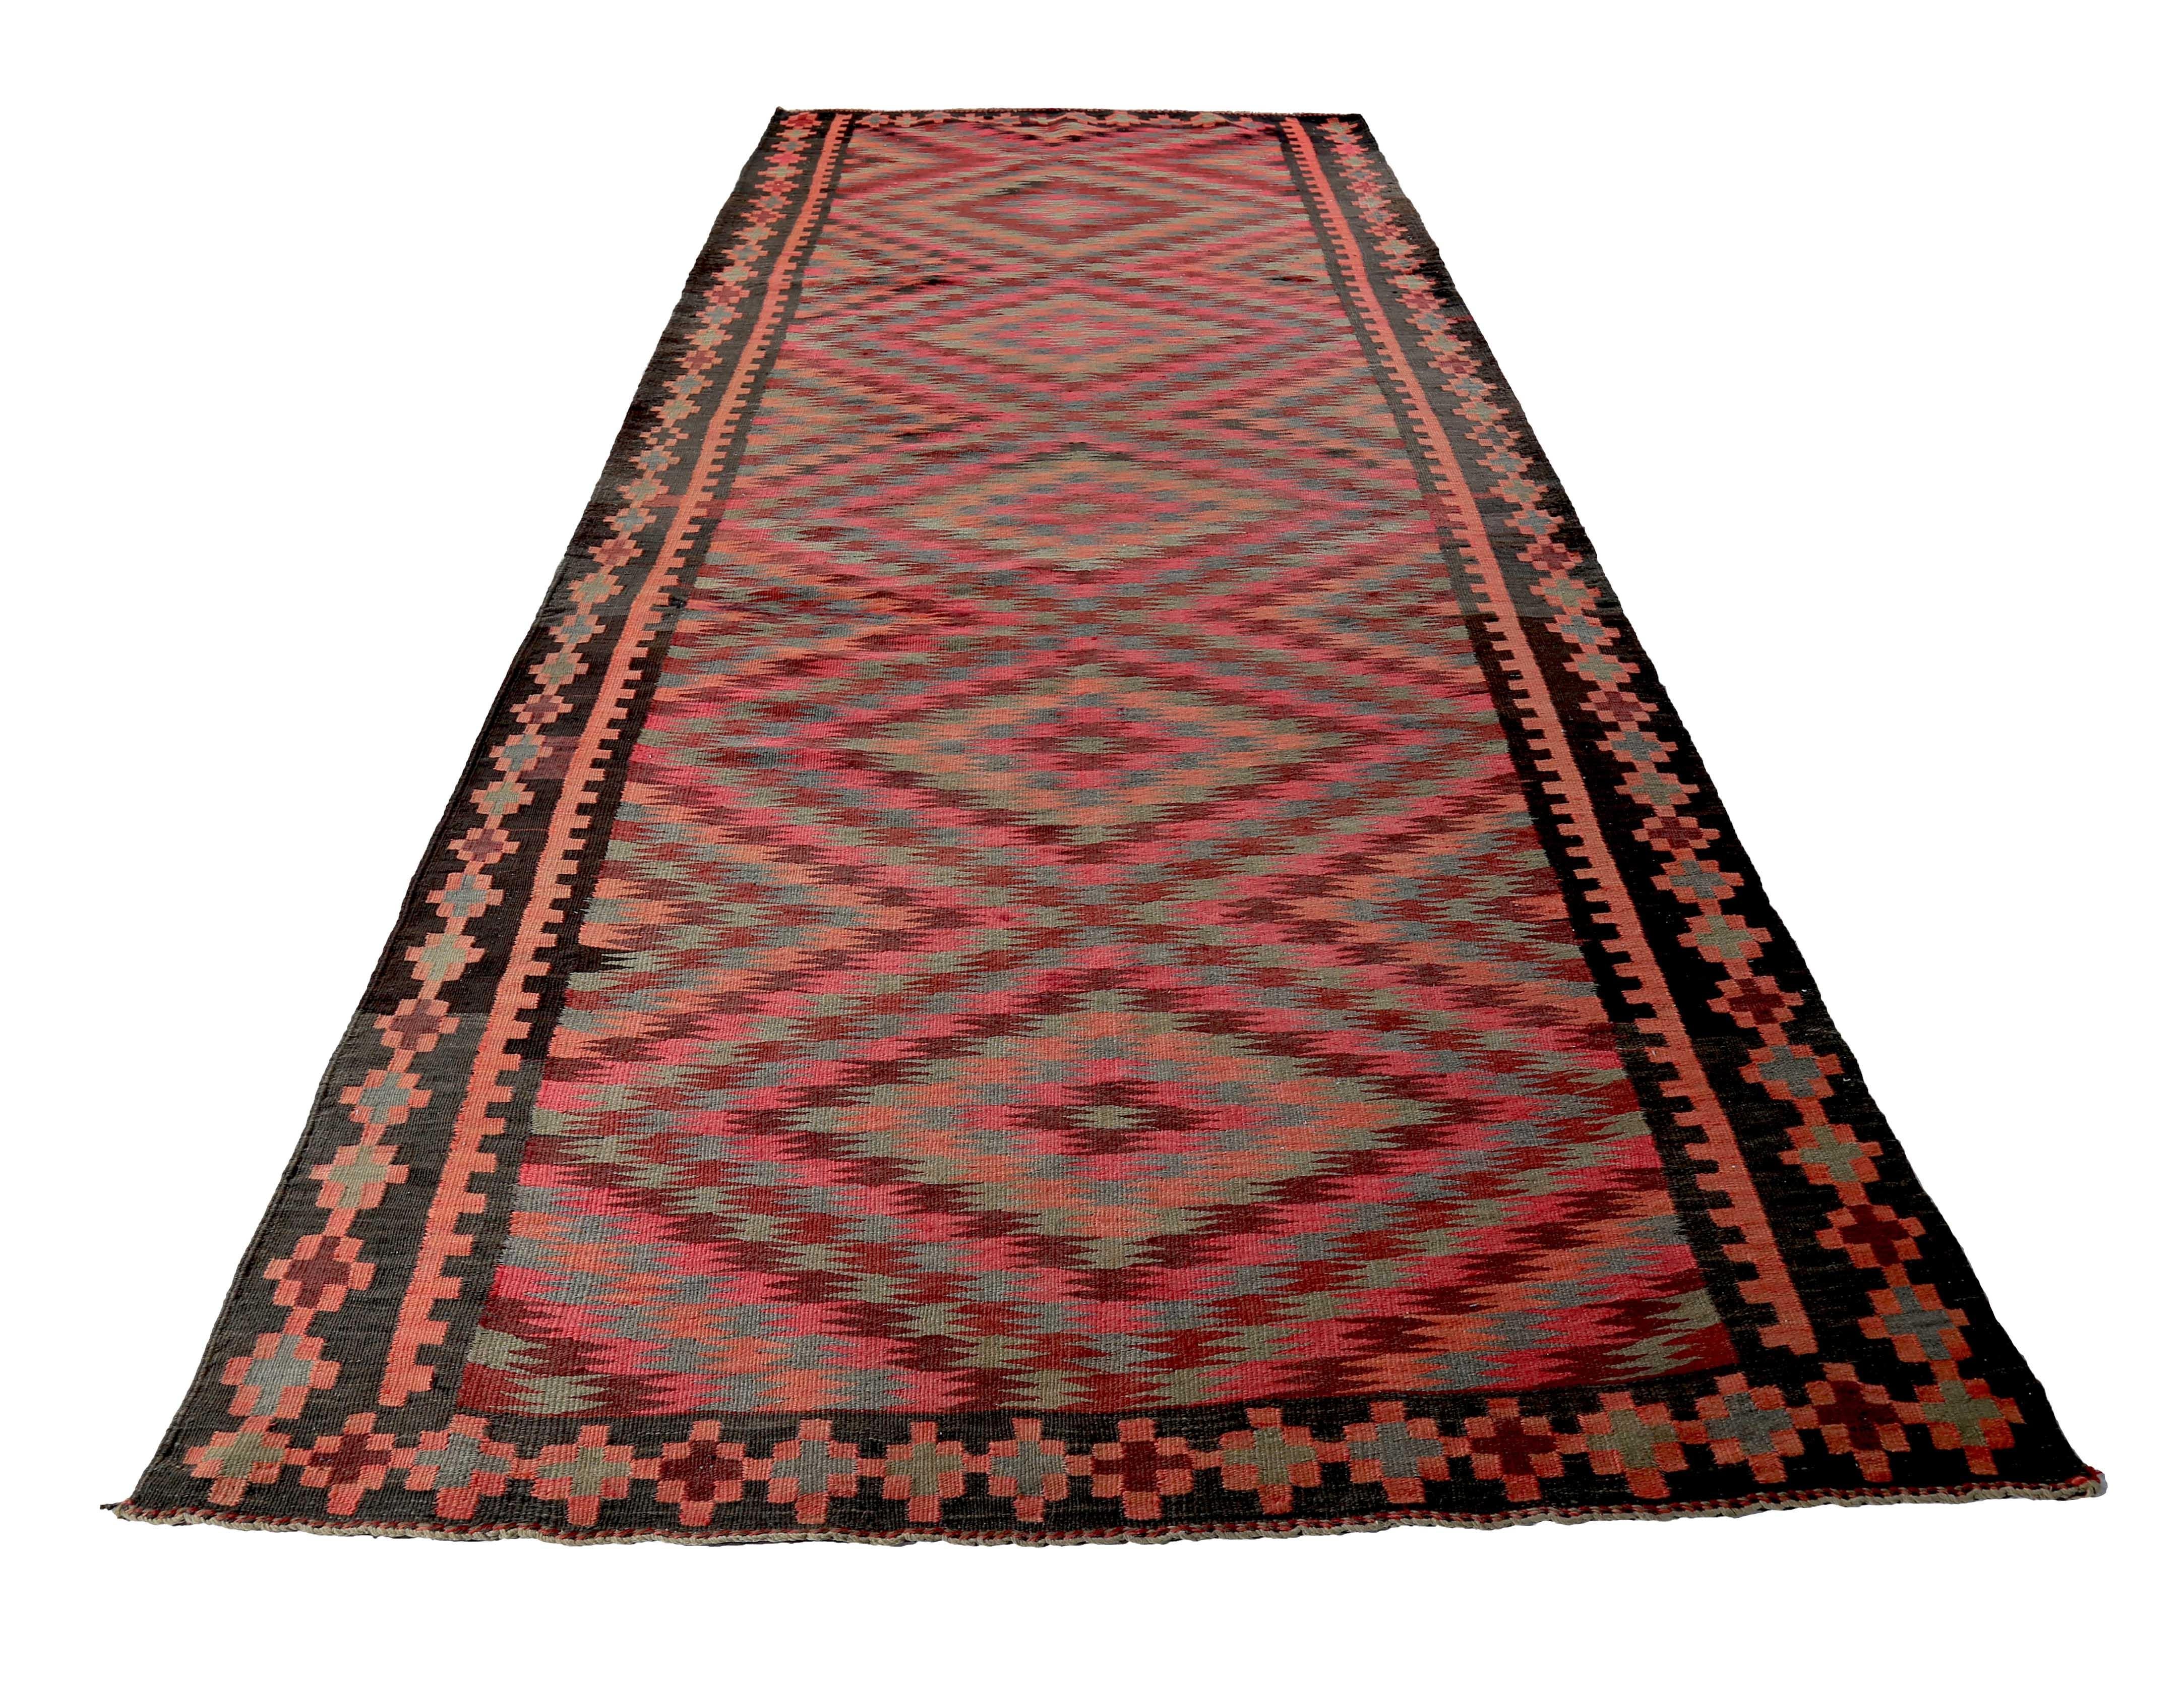 Türkischer Teppich, handgewebt aus feinster Schafswolle und gefärbt mit natürlichen Pflanzenfarben, die für Menschen und Haustiere unbedenklich sind. Es handelt sich um ein traditionelles Kelim-Flachgewebemuster mit einem roten Feld und grünen und